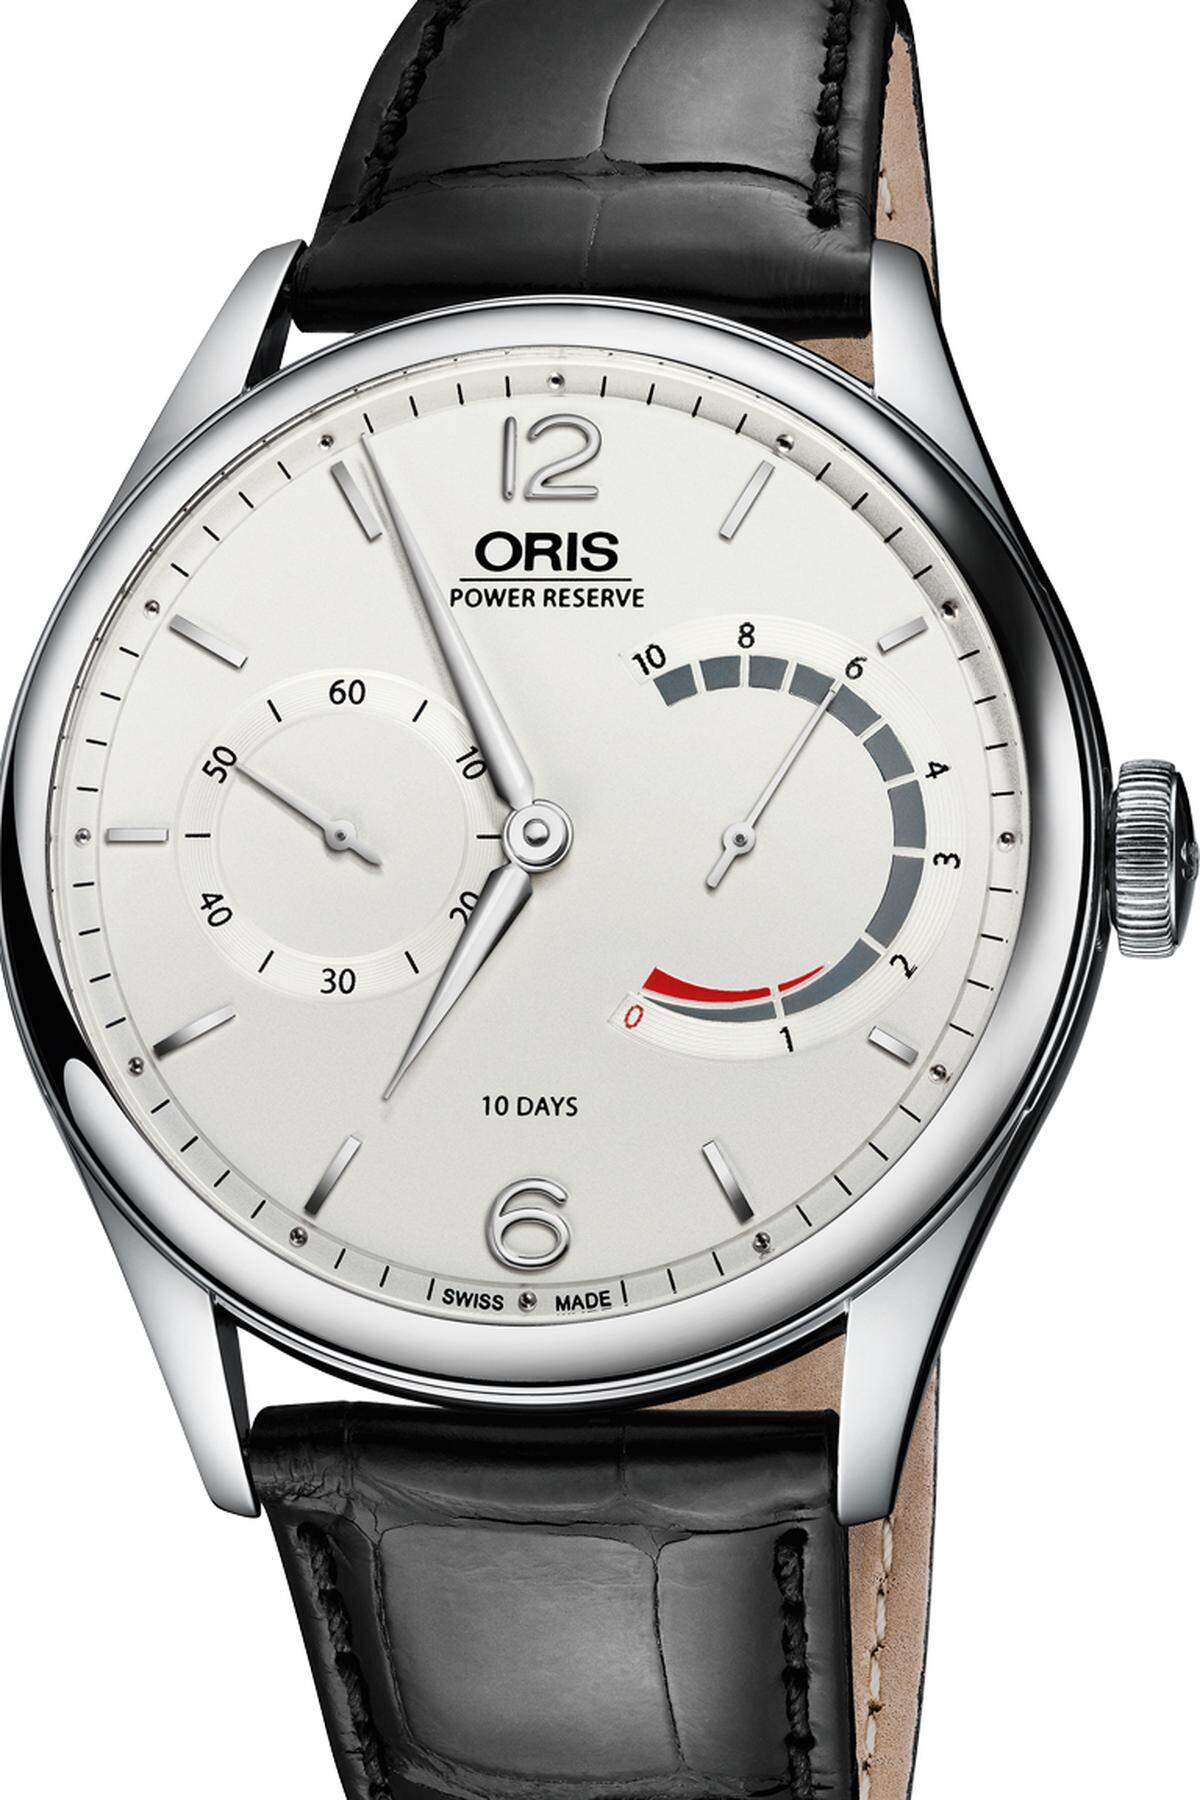 Zum Geburtstag serviert uns Oris das erste selbst entwickelte Uhrwerk seit 35 Jahren. Das Handaufzugkaliber verfügt über zehn Tage Gangreserve und eine von Oris so bezeichnete nicht lineare Gangreserveanzeige.